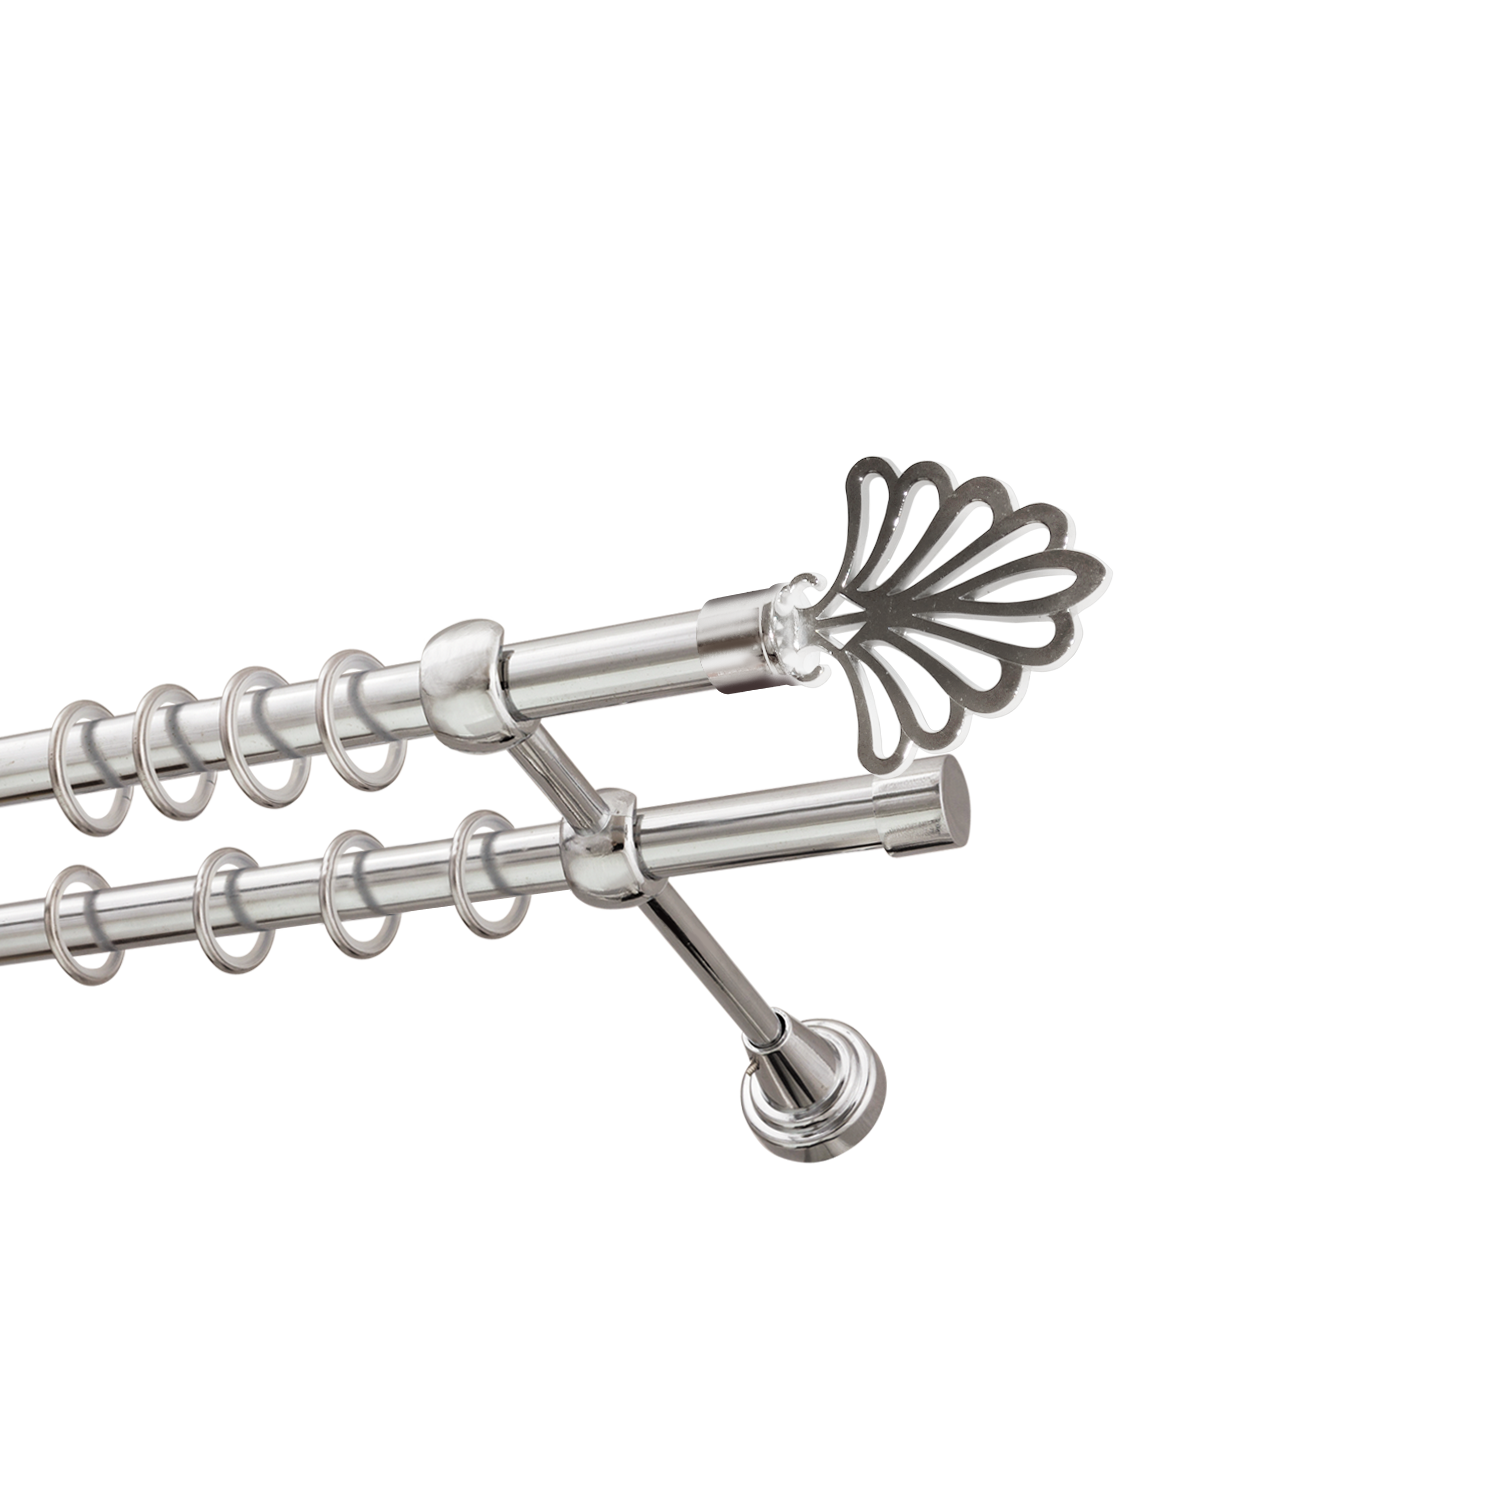 Металлический карниз для штор Бутик, двухрядный 16/16 мм, серебро, гладкая штанга, длина 180 см - фото Wikidecor.ru